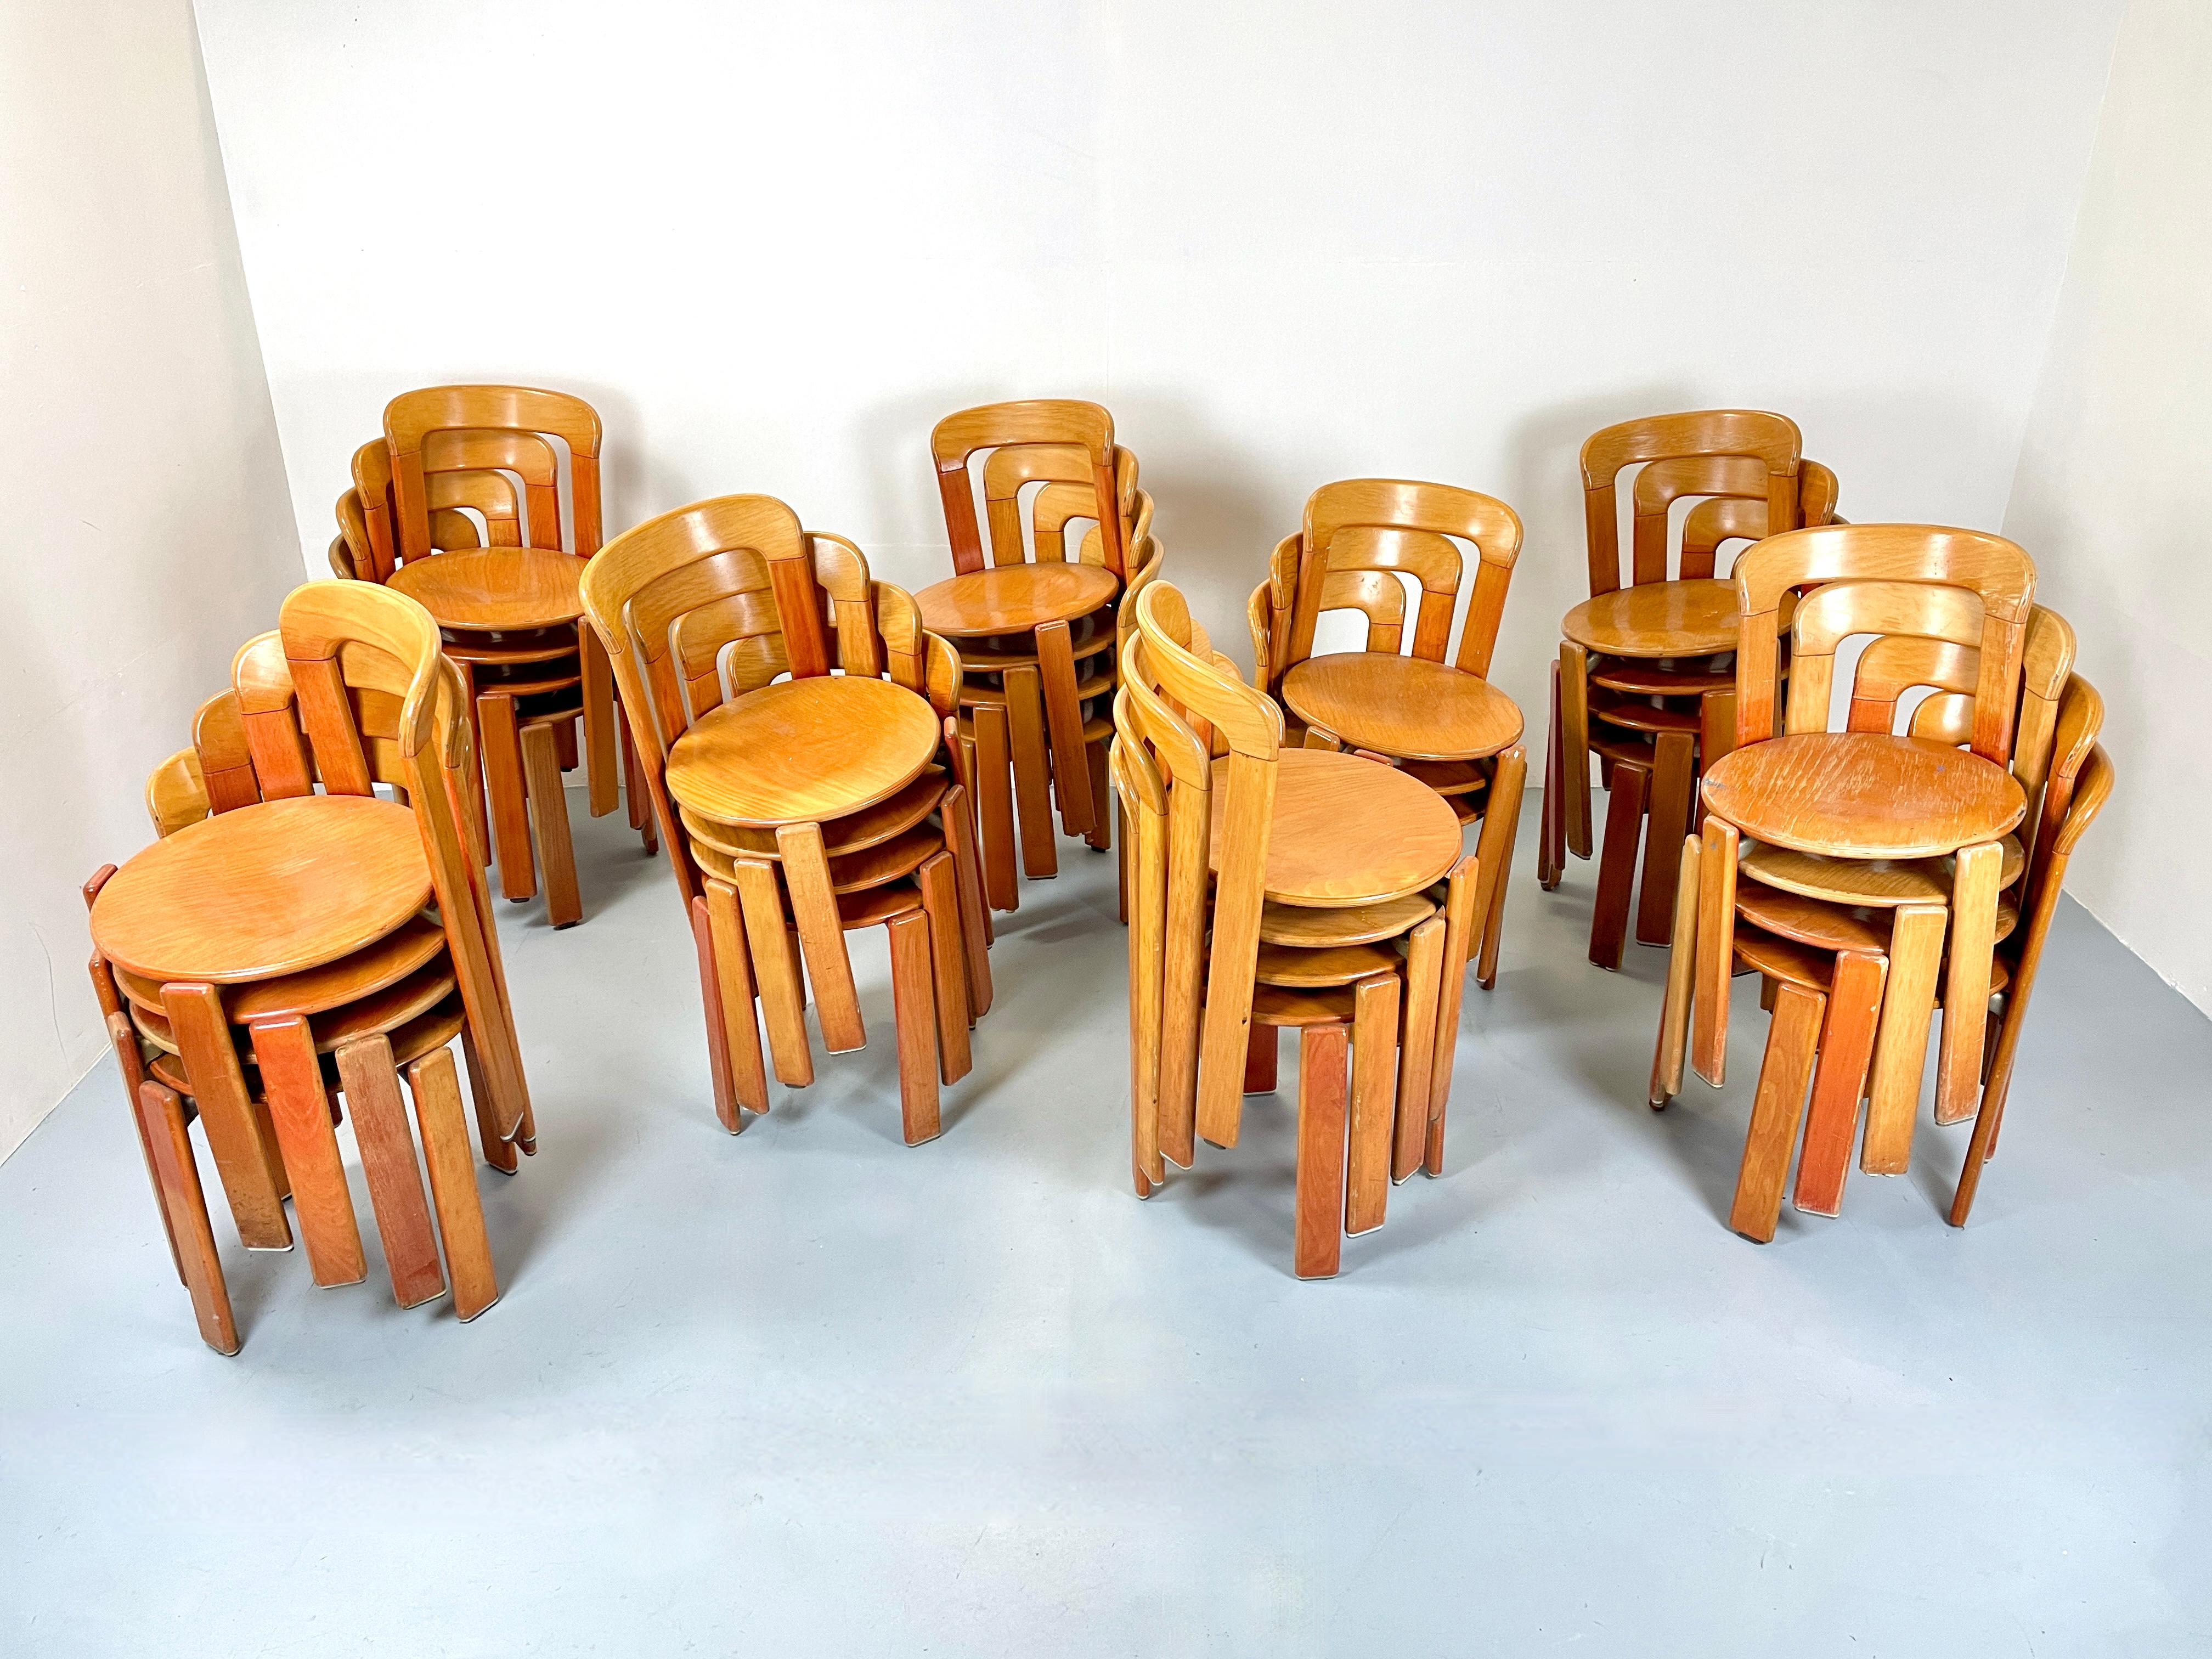 Schöne Vintage-Stapelstühle von Bruno Rey für Dietiker. Die Stühle sind aus einem schönen und warmen Buchenholz. Wahrscheinlich aus den 1980er Jahren, hergestellt in der Schweiz.

Solide und sehr robuste Konstruktion mit der einzigartigen